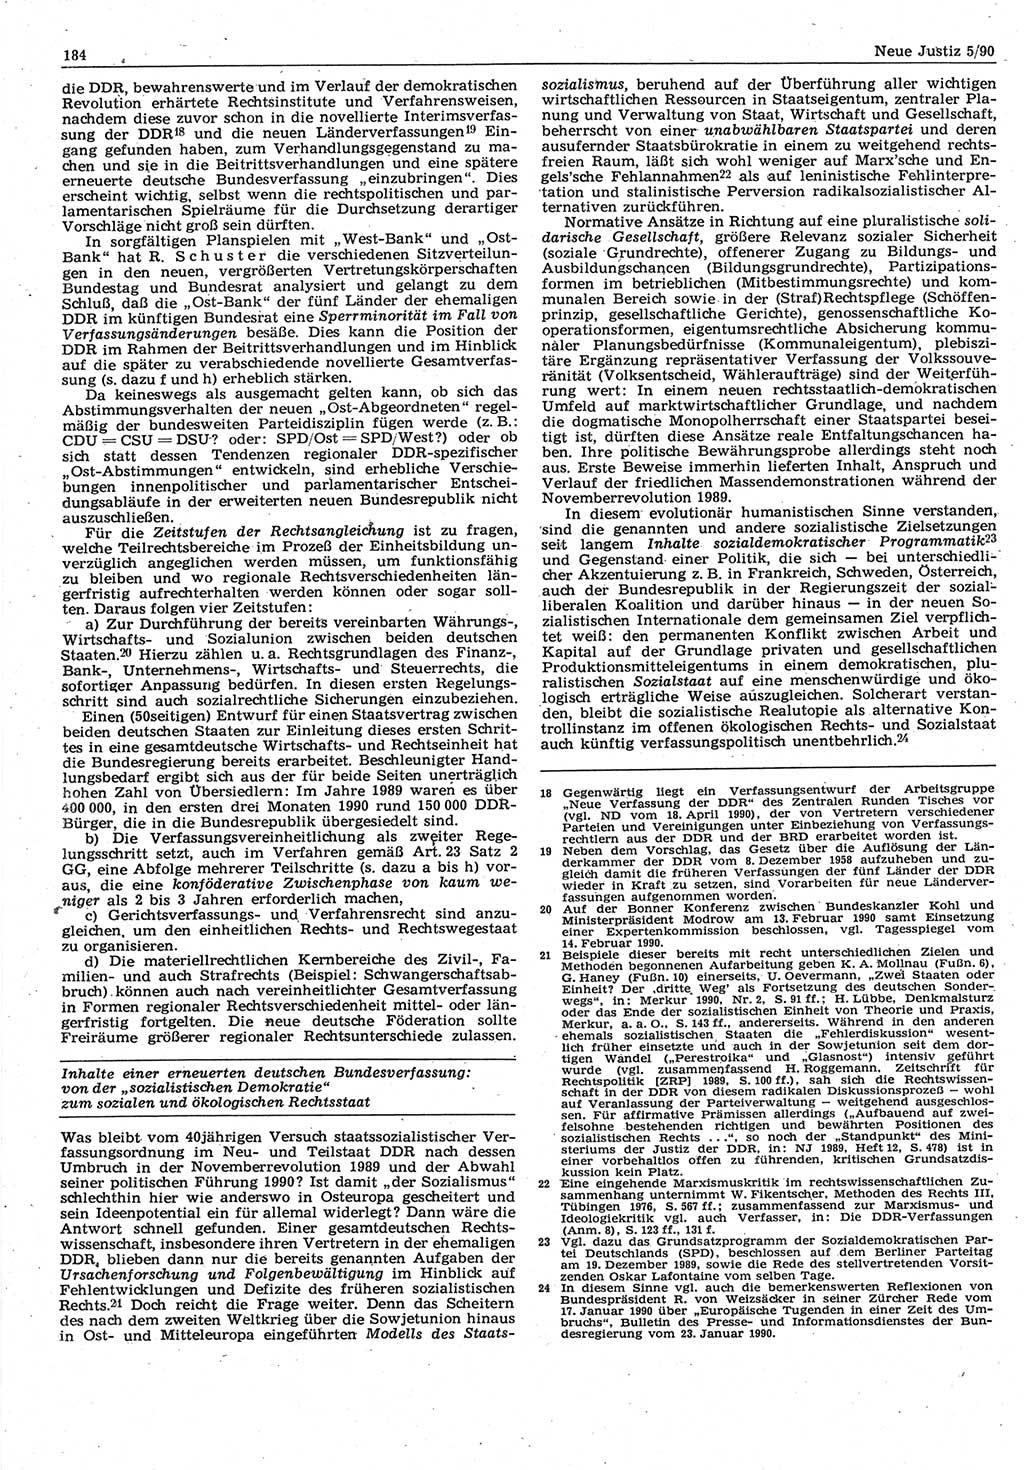 Neue Justiz (NJ), Zeitschrift für Rechtsetzung und Rechtsanwendung [Deutsche Demokratische Republik (DDR)], 44. Jahrgang 1990, Seite 184 (NJ DDR 1990, S. 184)